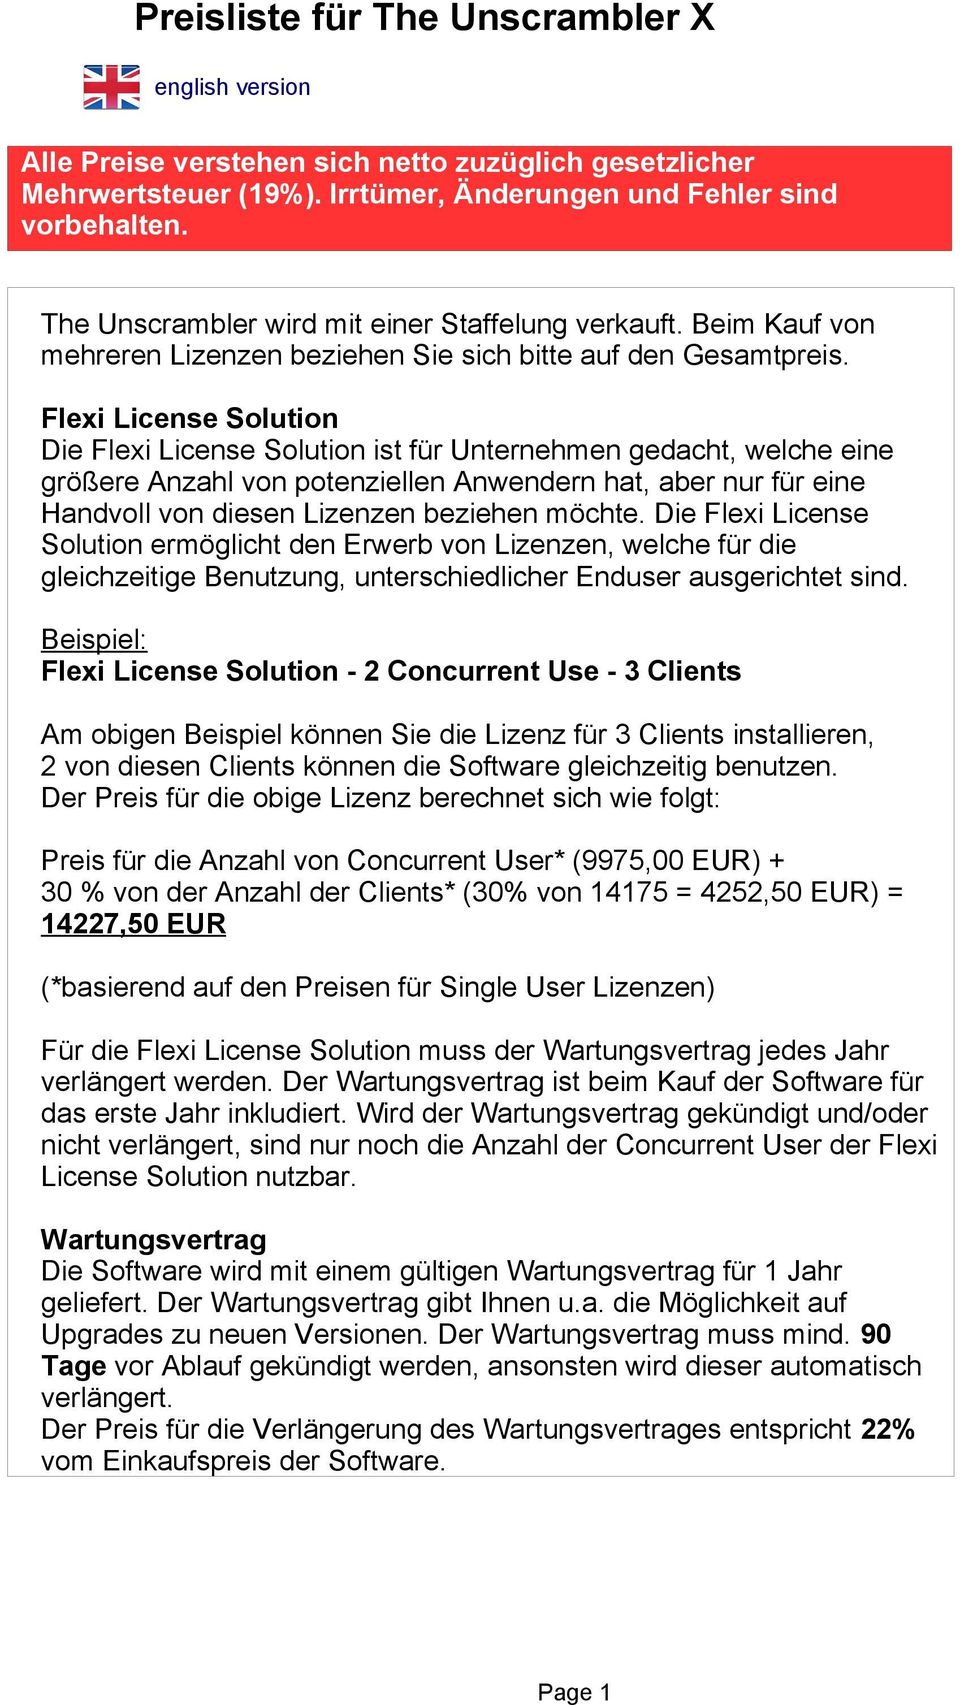 Flexi License Solution Die Flexi License Solution ist für Unternehmen gedacht, welche eine größere Anzahl von potenziellen Anwendern hat, aber nur für eine Handvoll von diesen Lizenzen beziehen